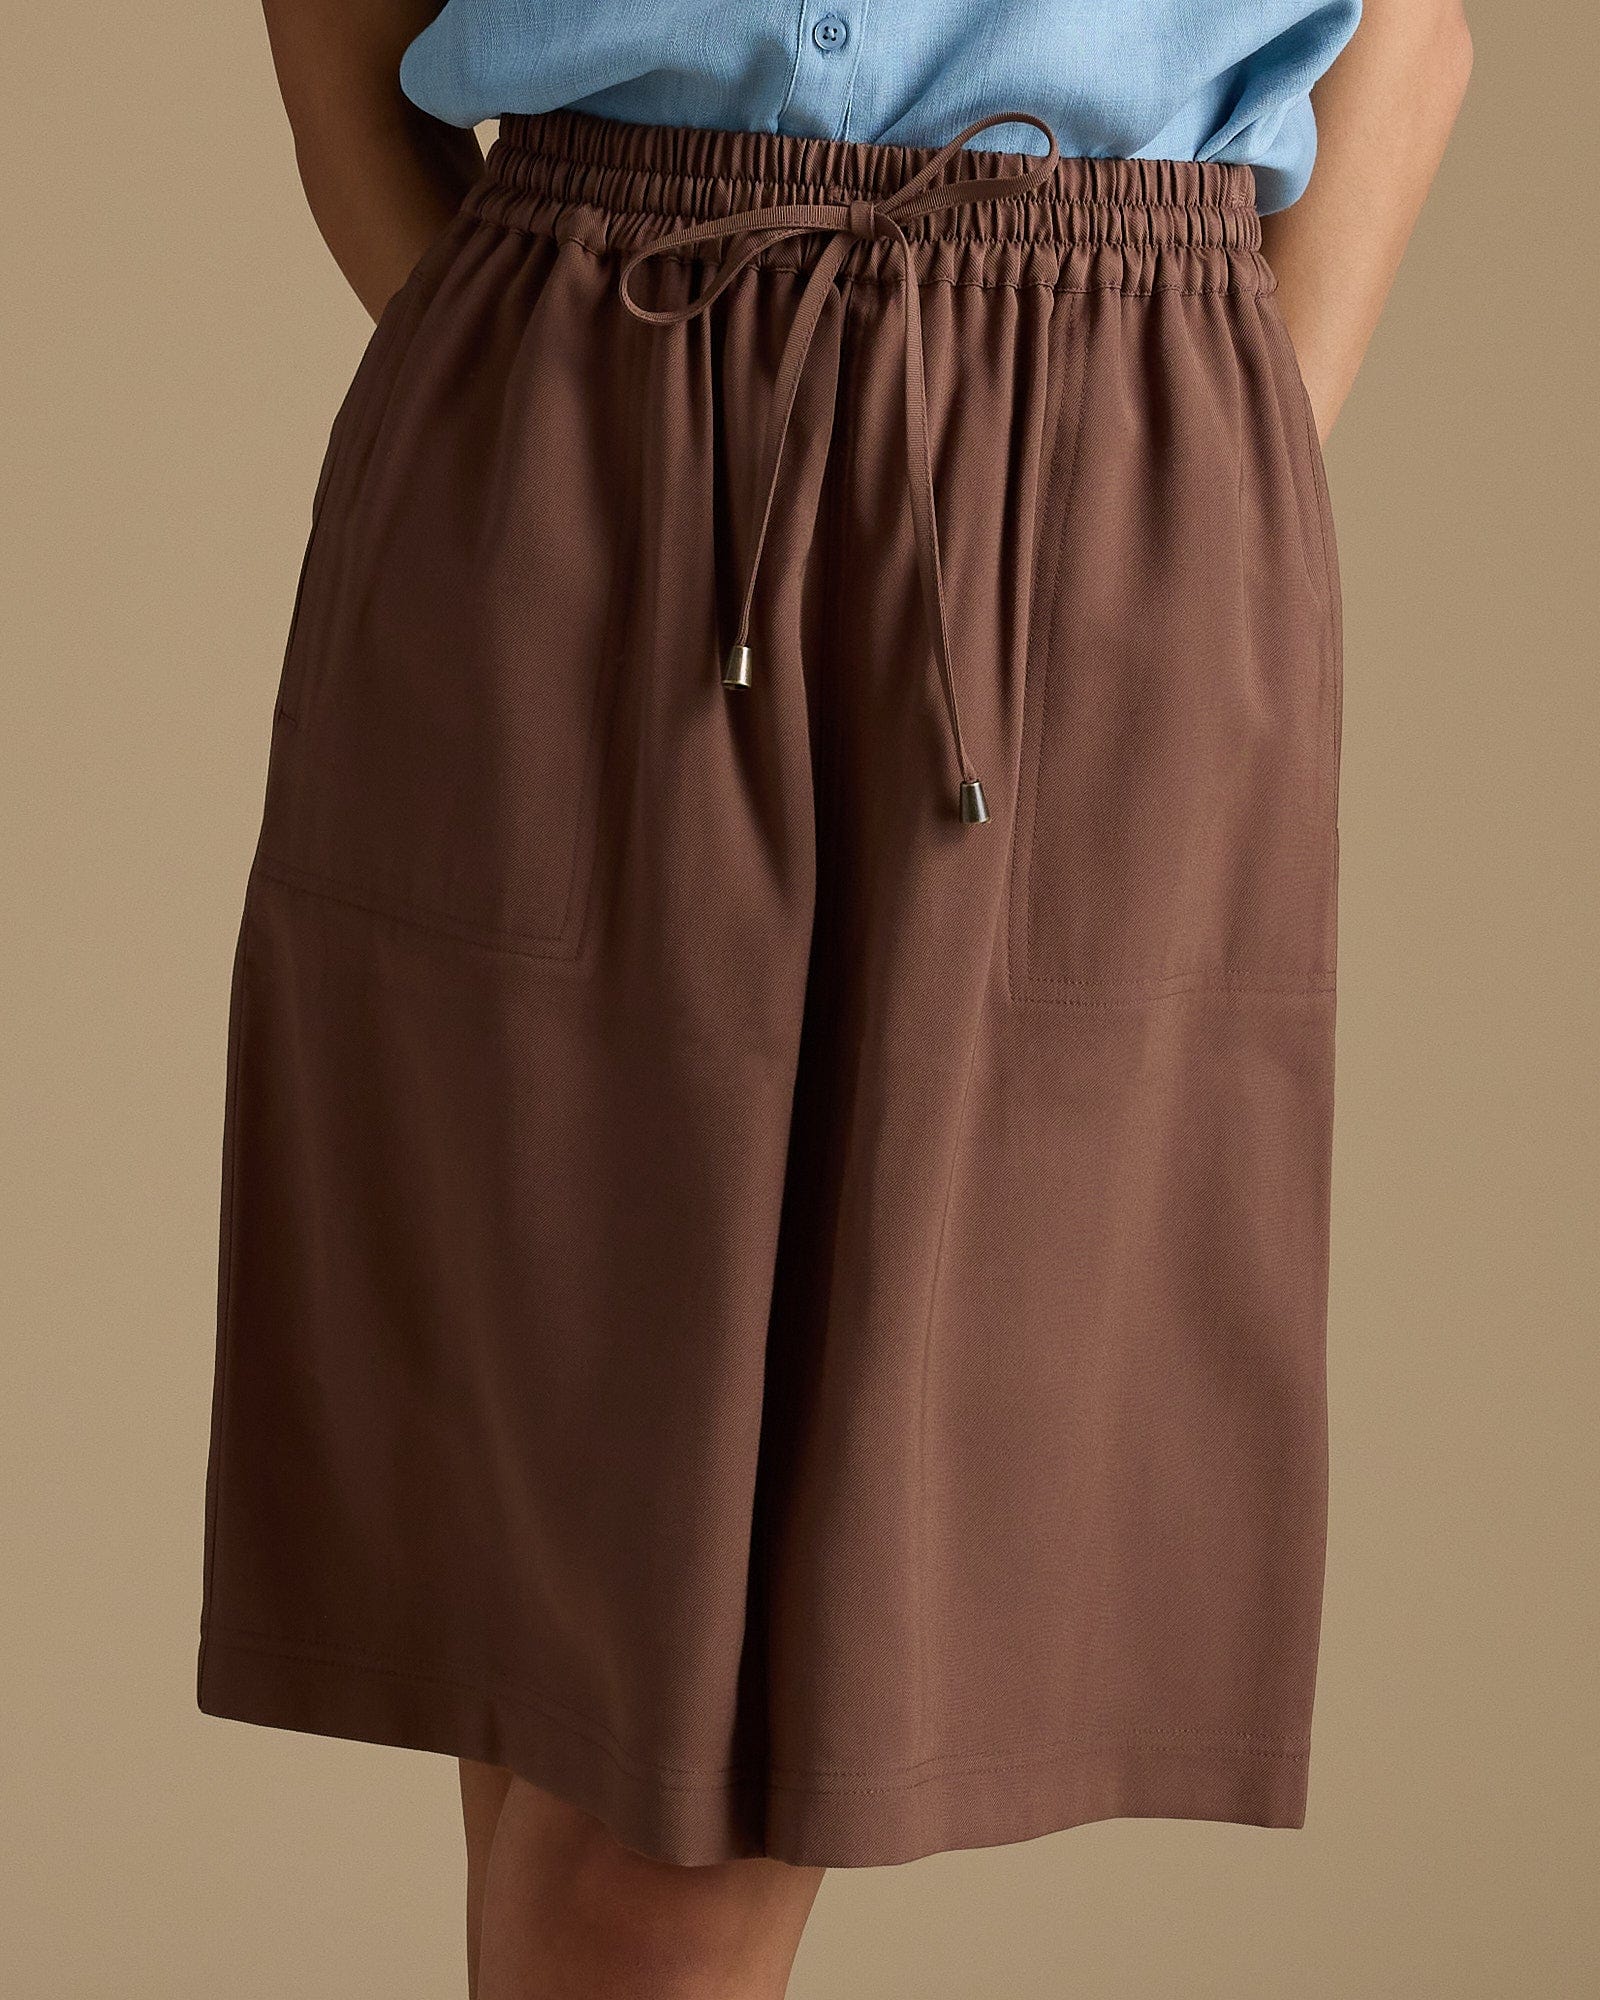 Woman in brown, knee-length skirt